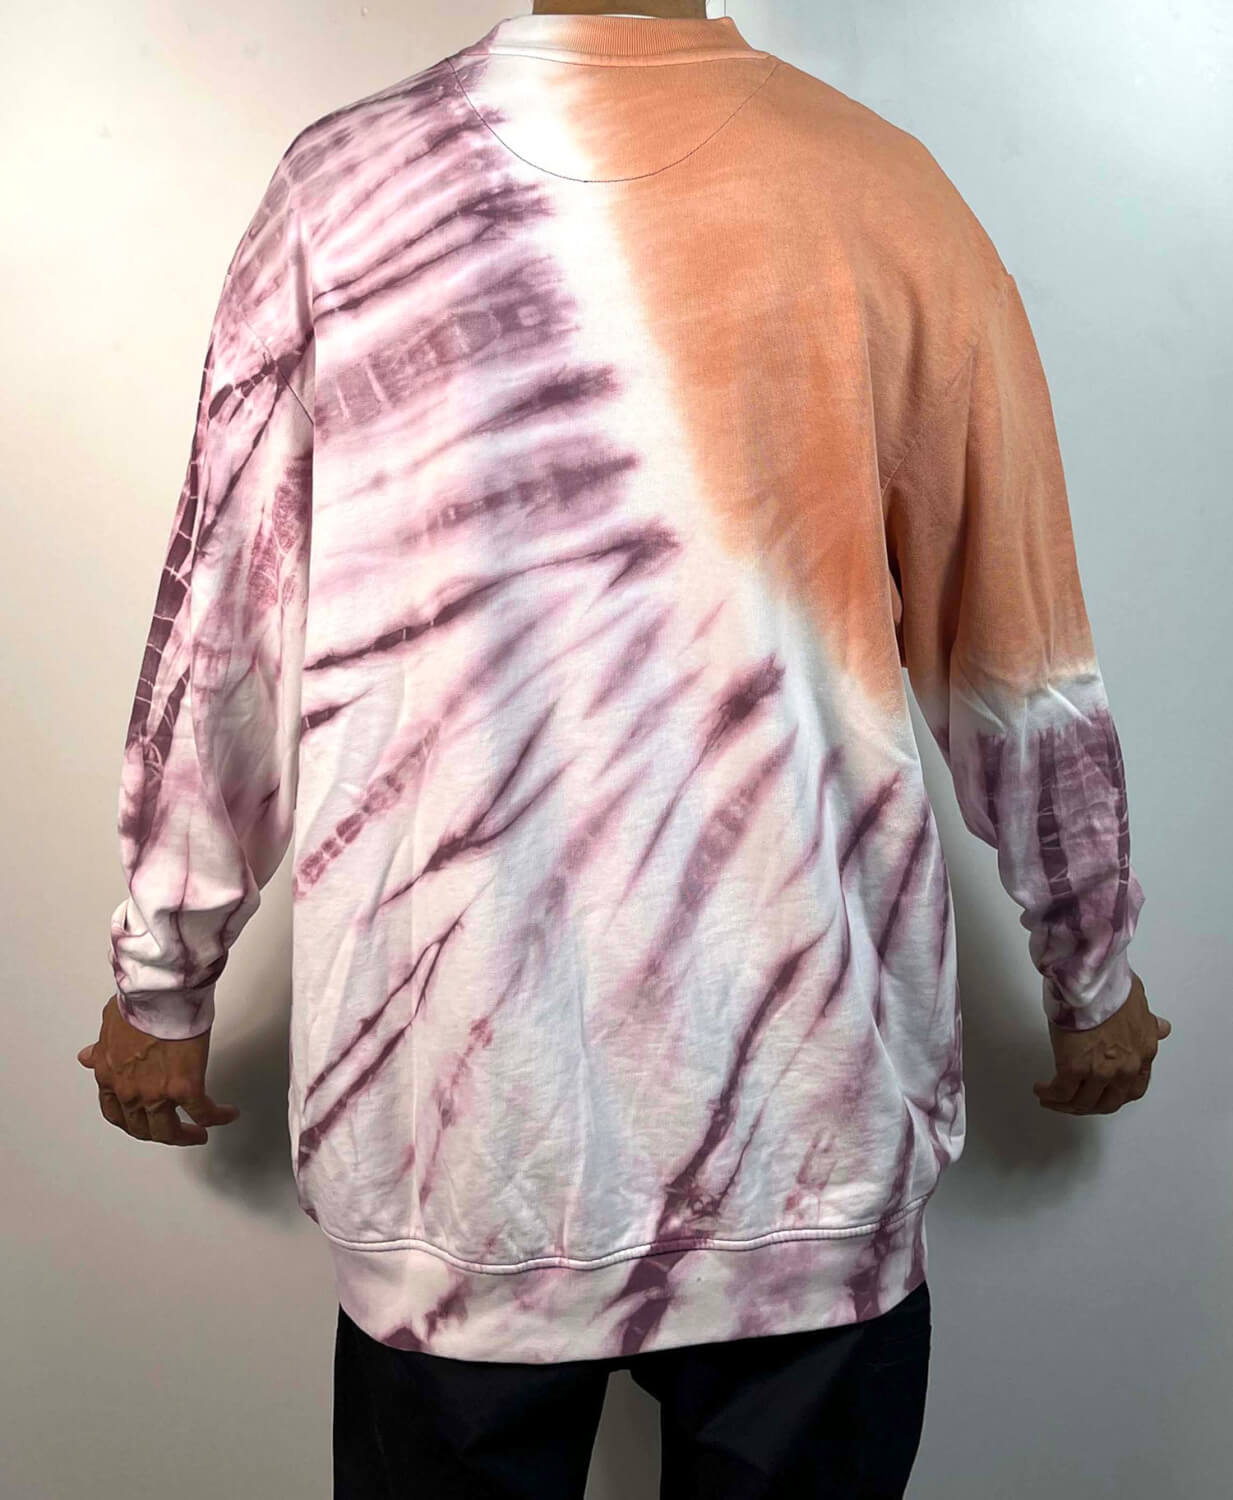 Camiseta de manga larga tie dye en tonos salmón, violeta, rosa y blanco.